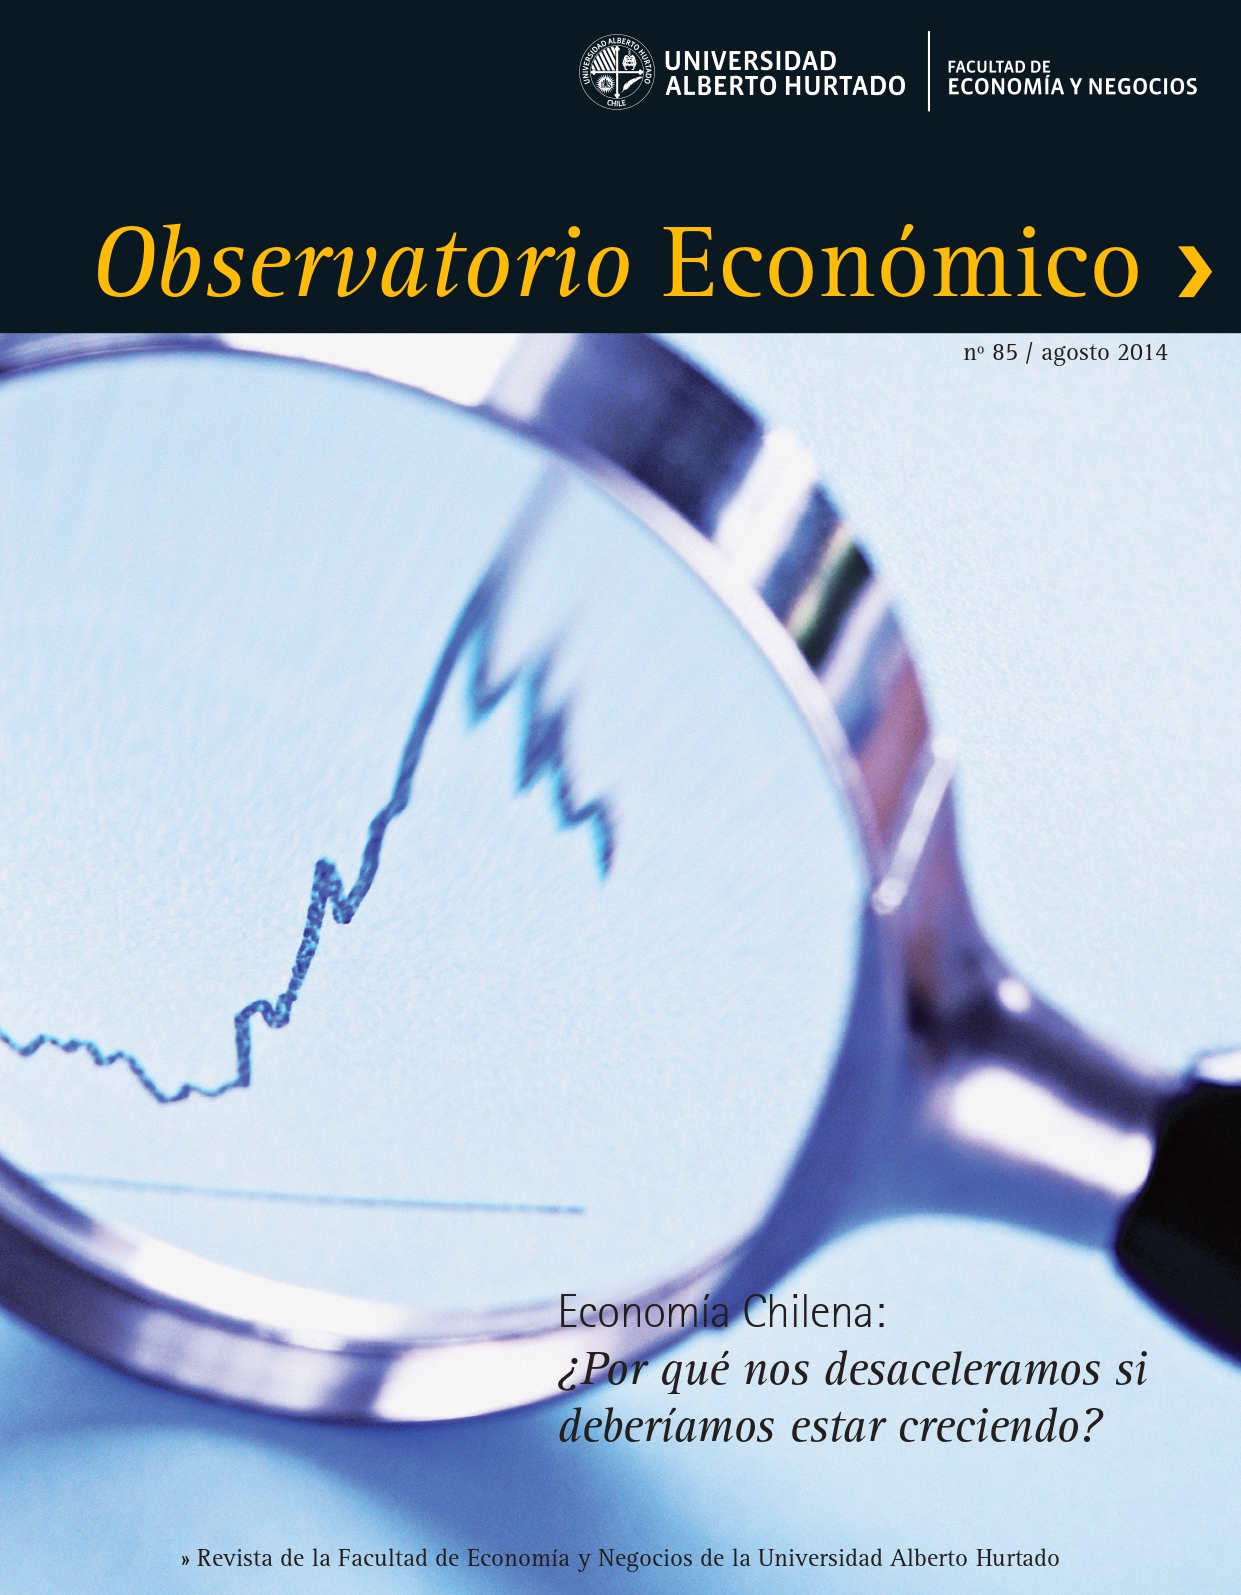 Título del número de la revista : "Economía Chilena : ¿Por quénos desaceleramos si deberíamos estar creciendo?"